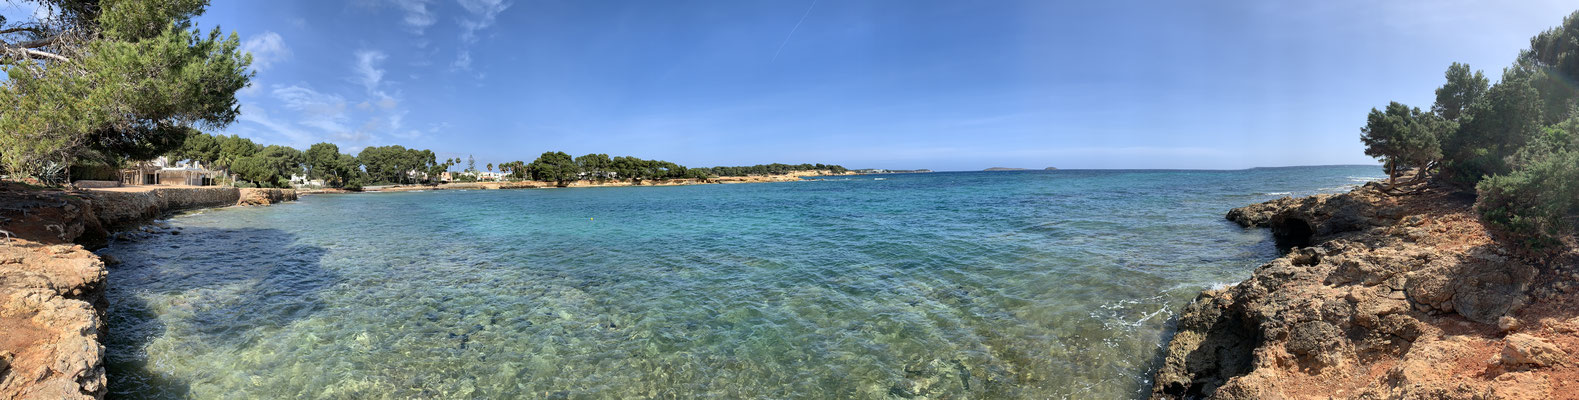 Vista del mar, Playa Babylon, Ibiza